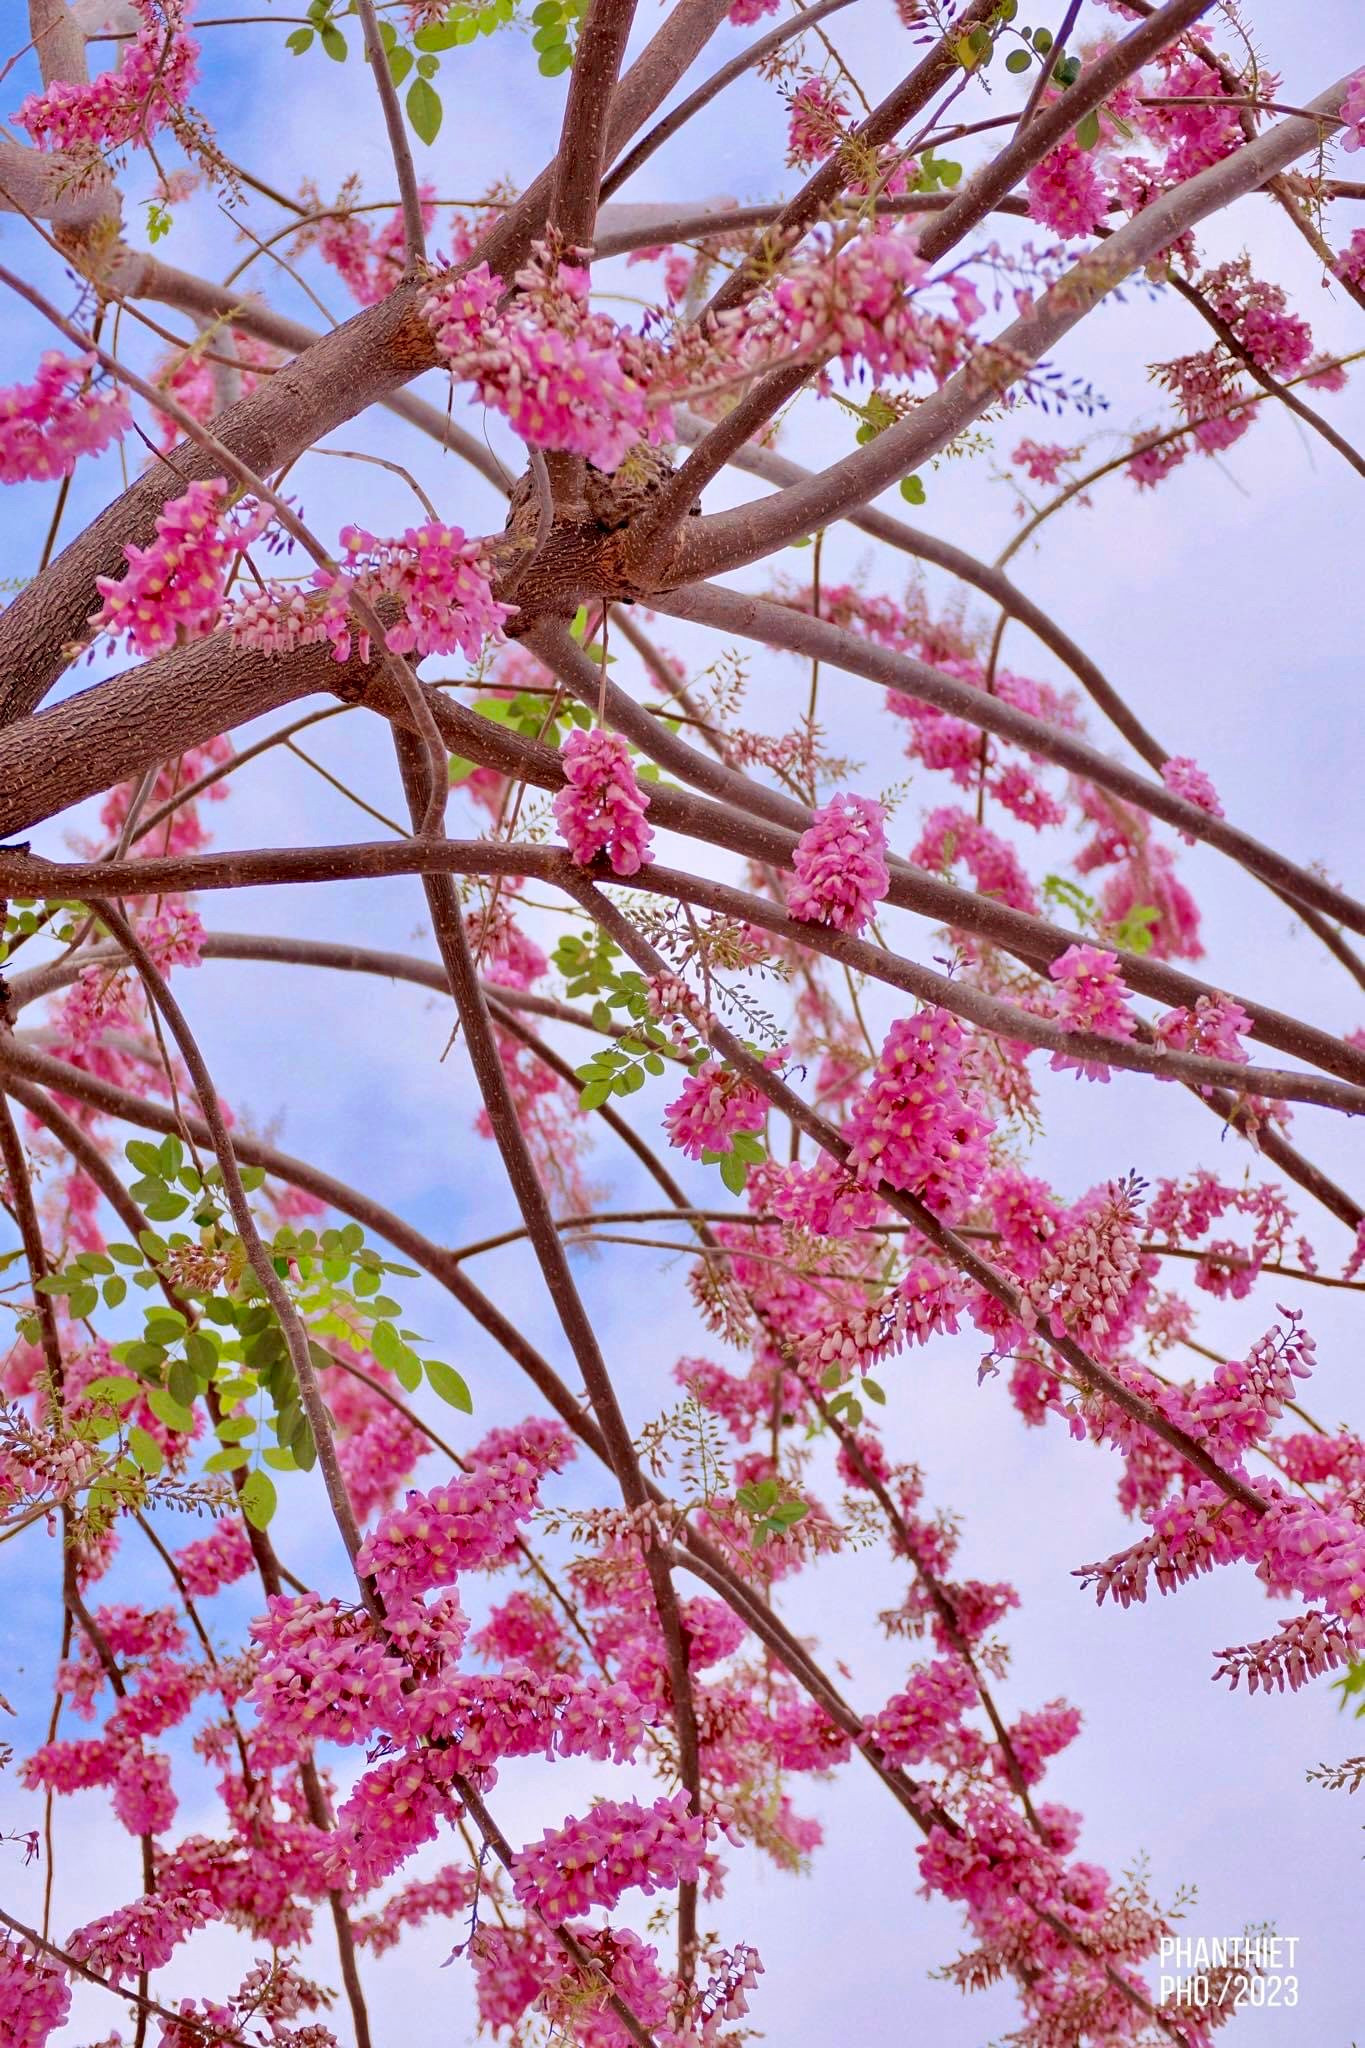 Đường hoa Võ Nguyên Giáp ở TP Phan Thiết của Bình Thuận rực rỡ loài hoa gì mà khiến bao người say mê? - Ảnh 2.